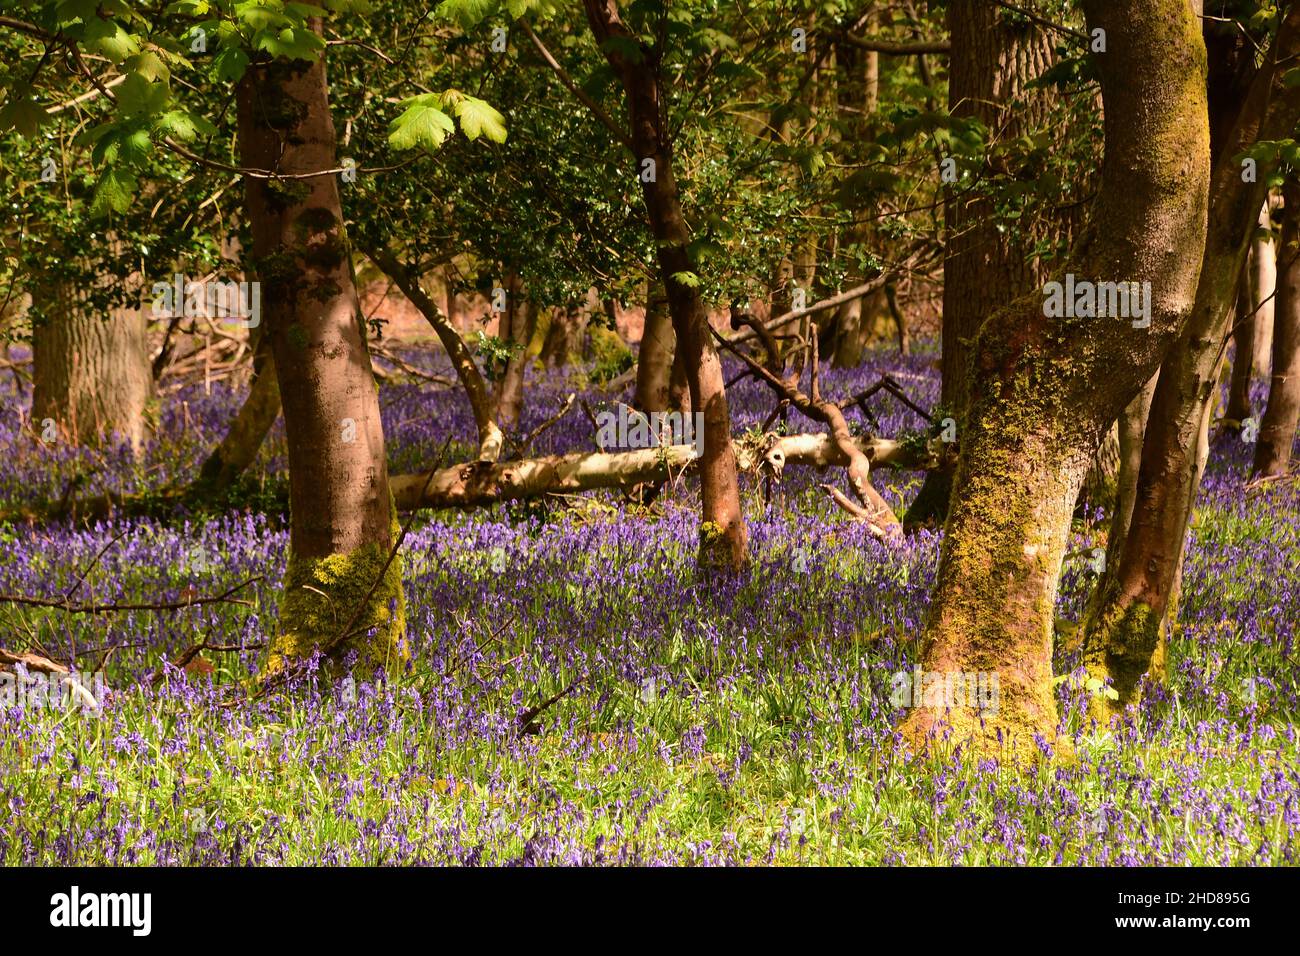 Bluebell Woods at the Ashridge Estate, Hertfordshire, England Stock Photo